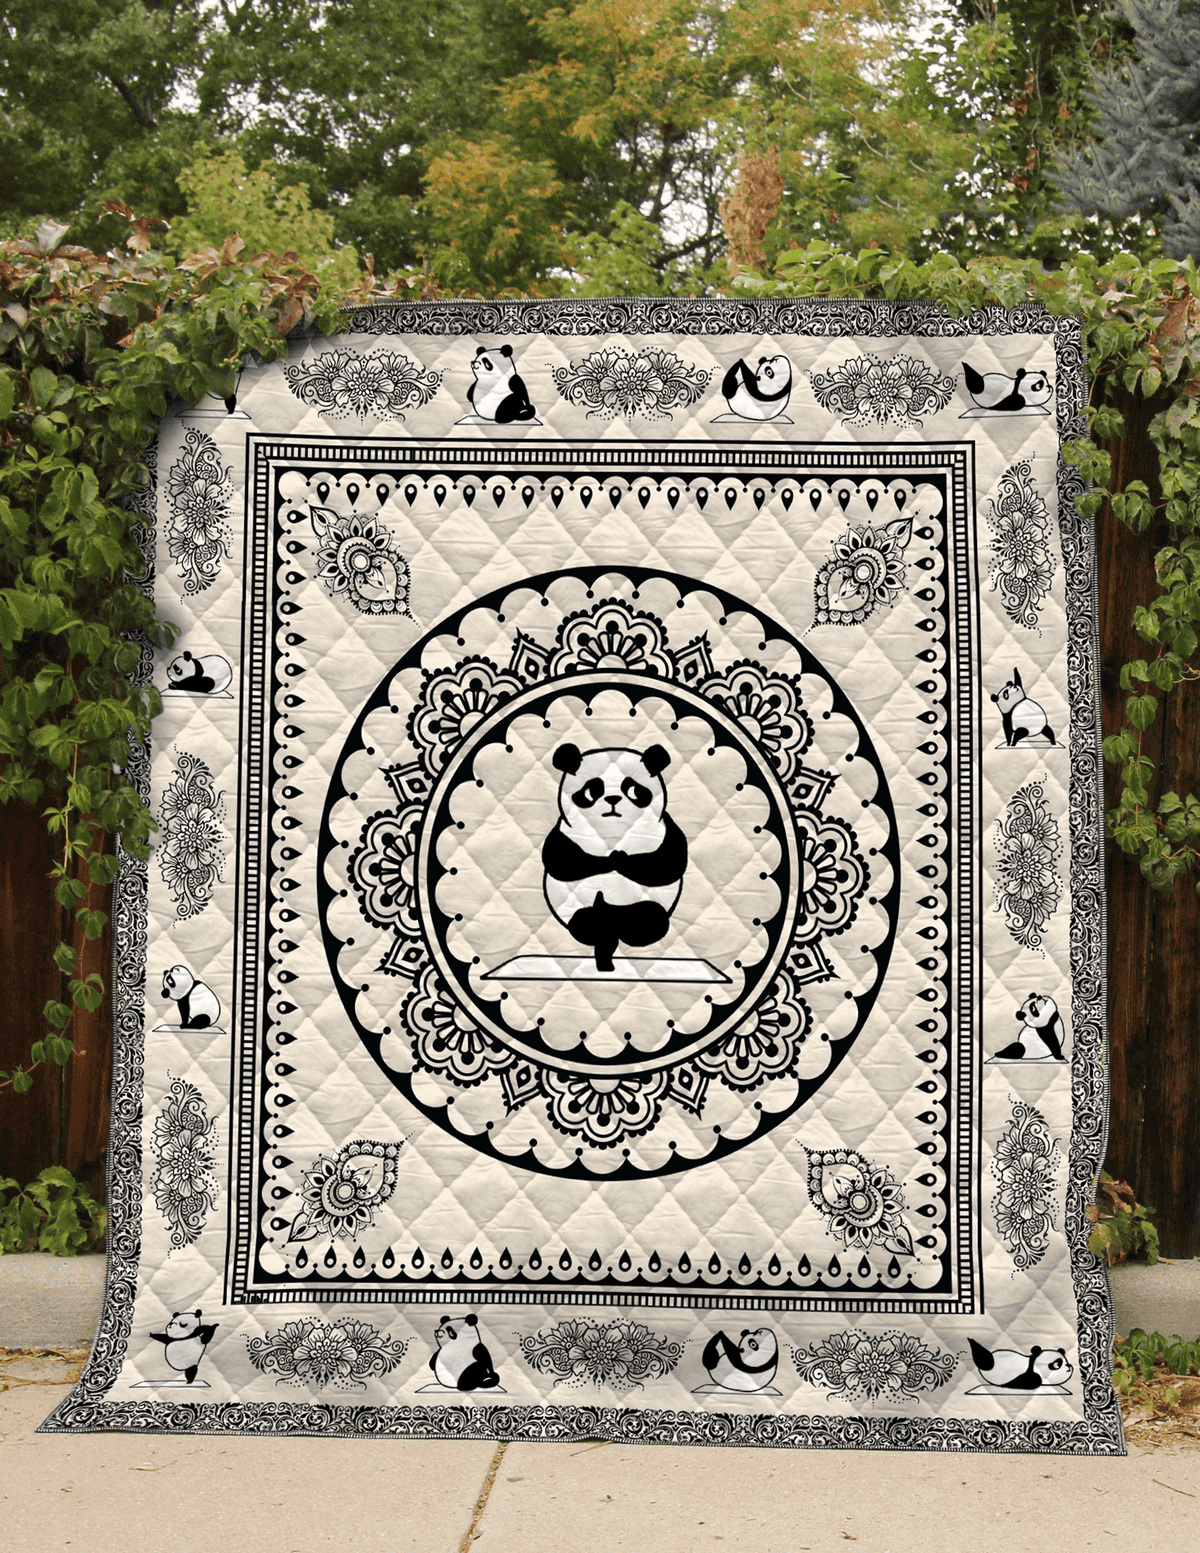 panda-zr69-quilt